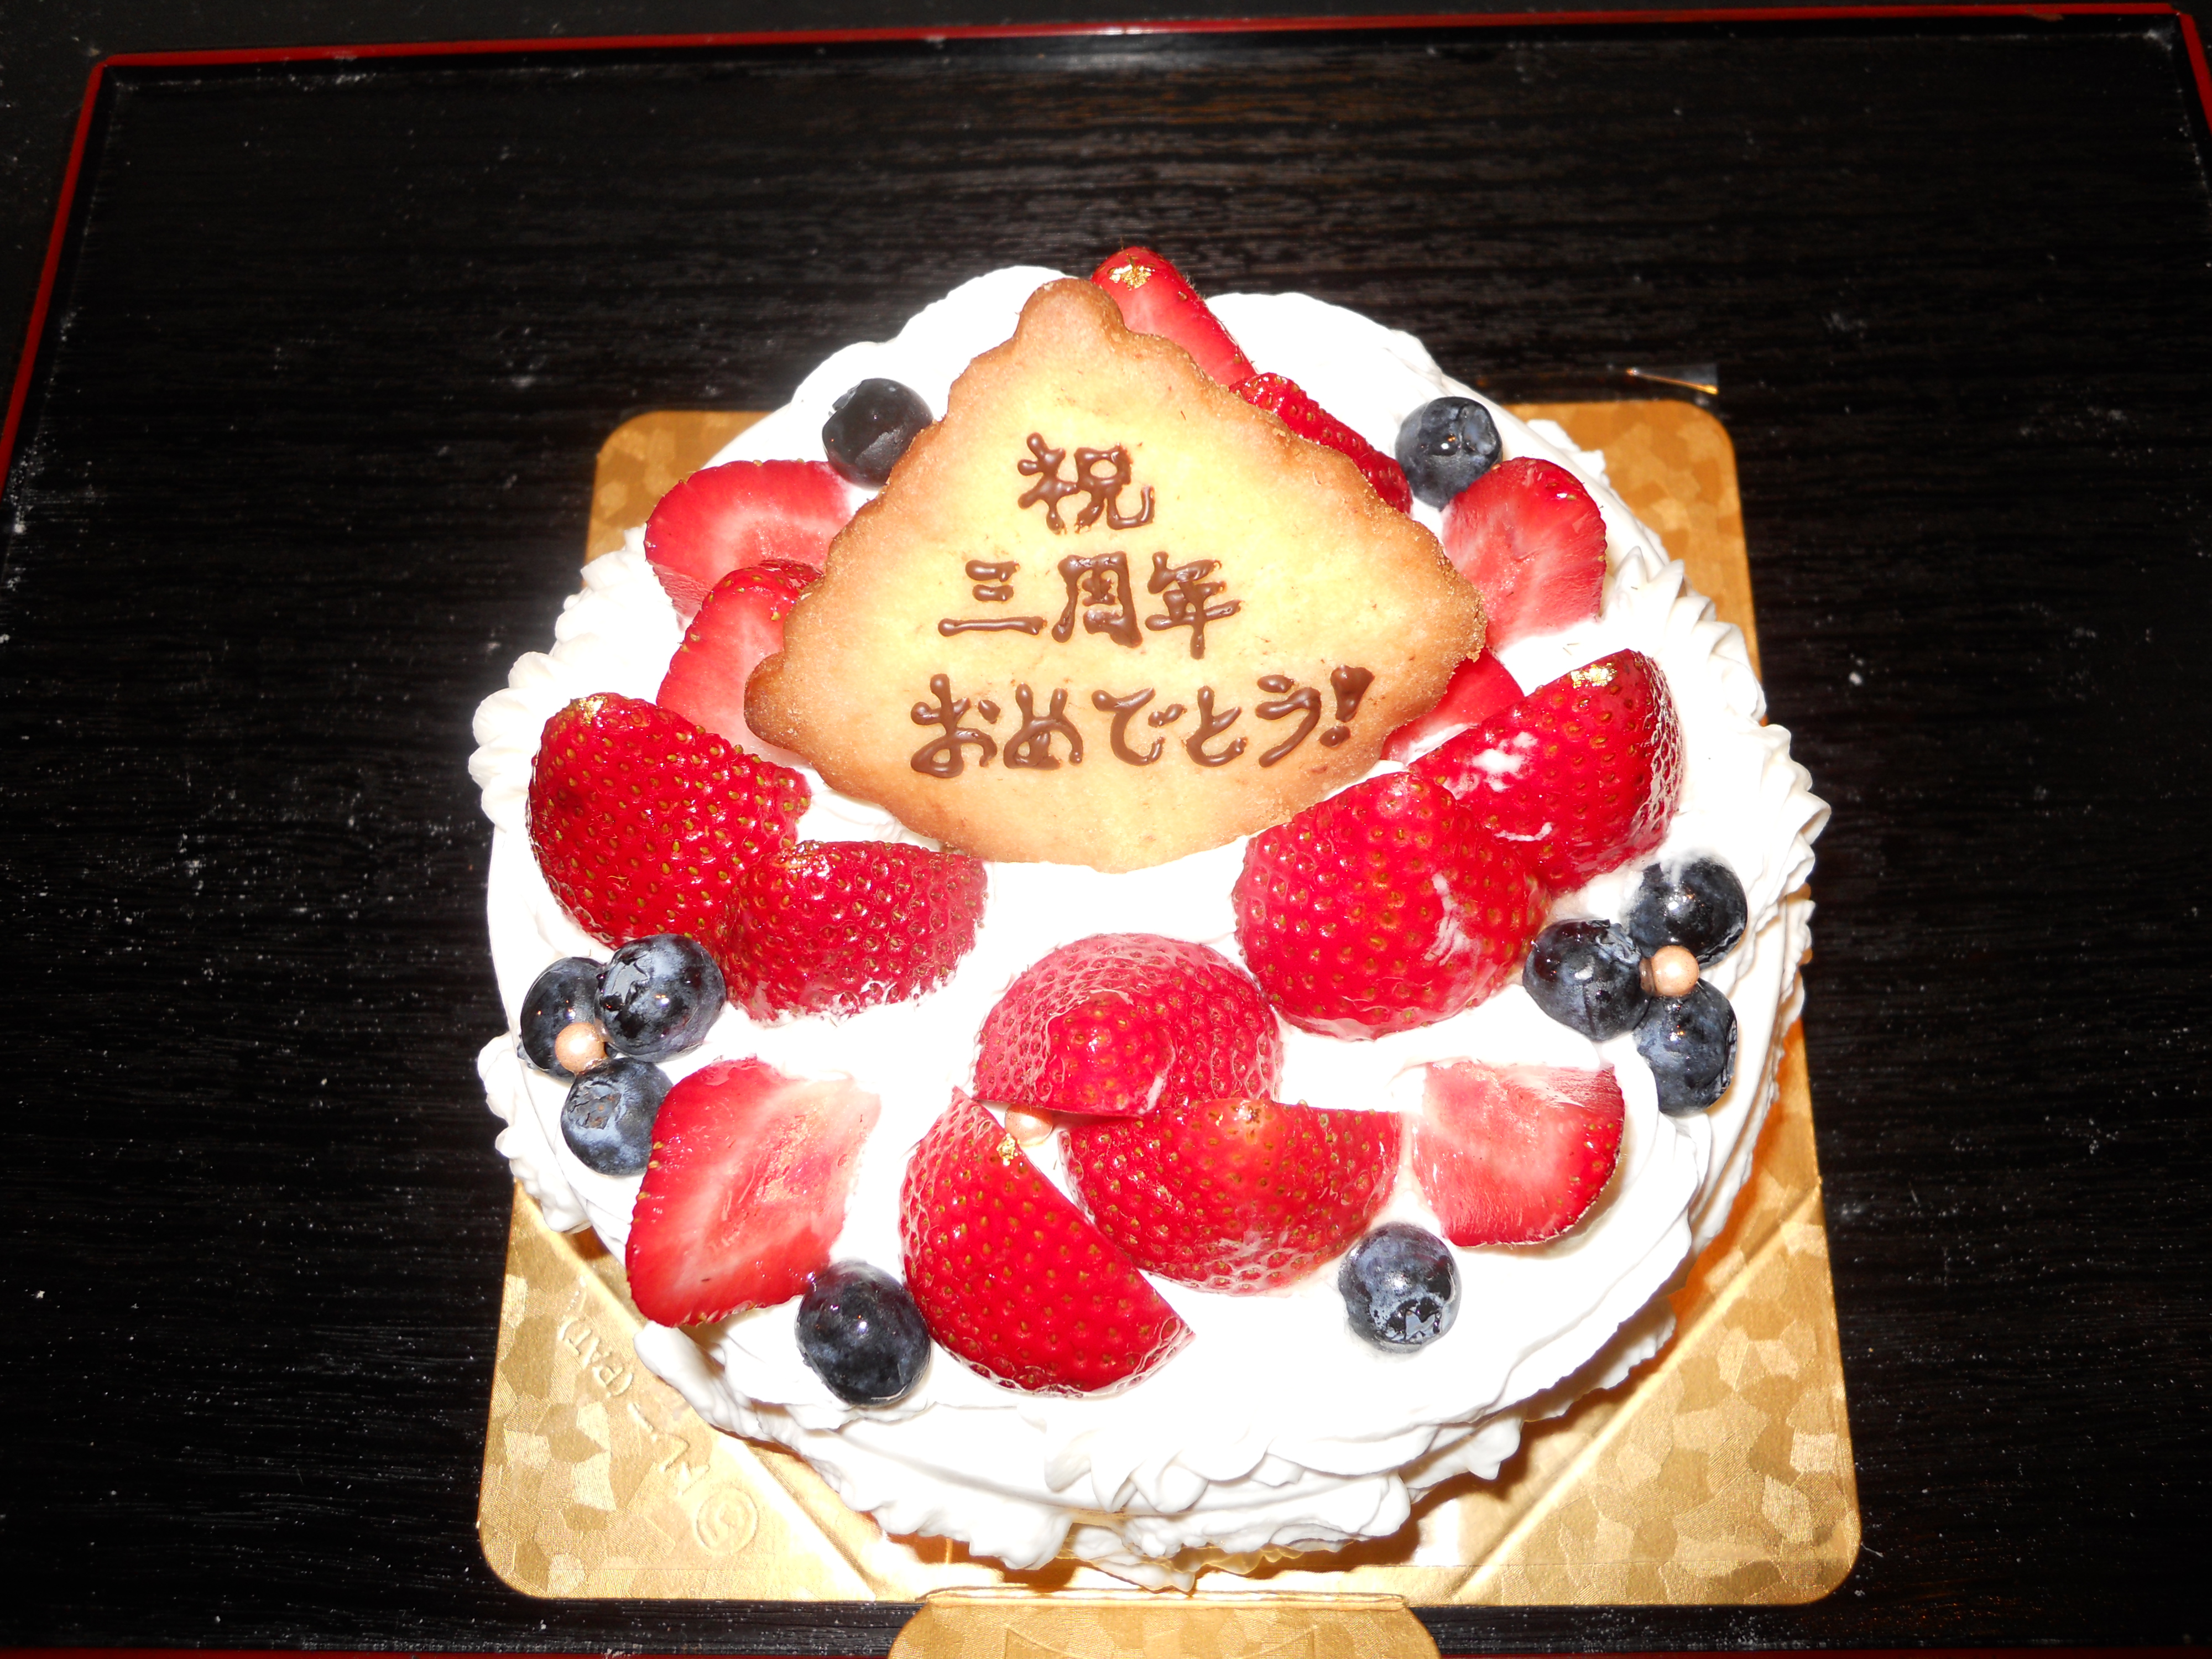 http://www.kyoto-cake.com/2012/11/27/DSCN2702.JPG